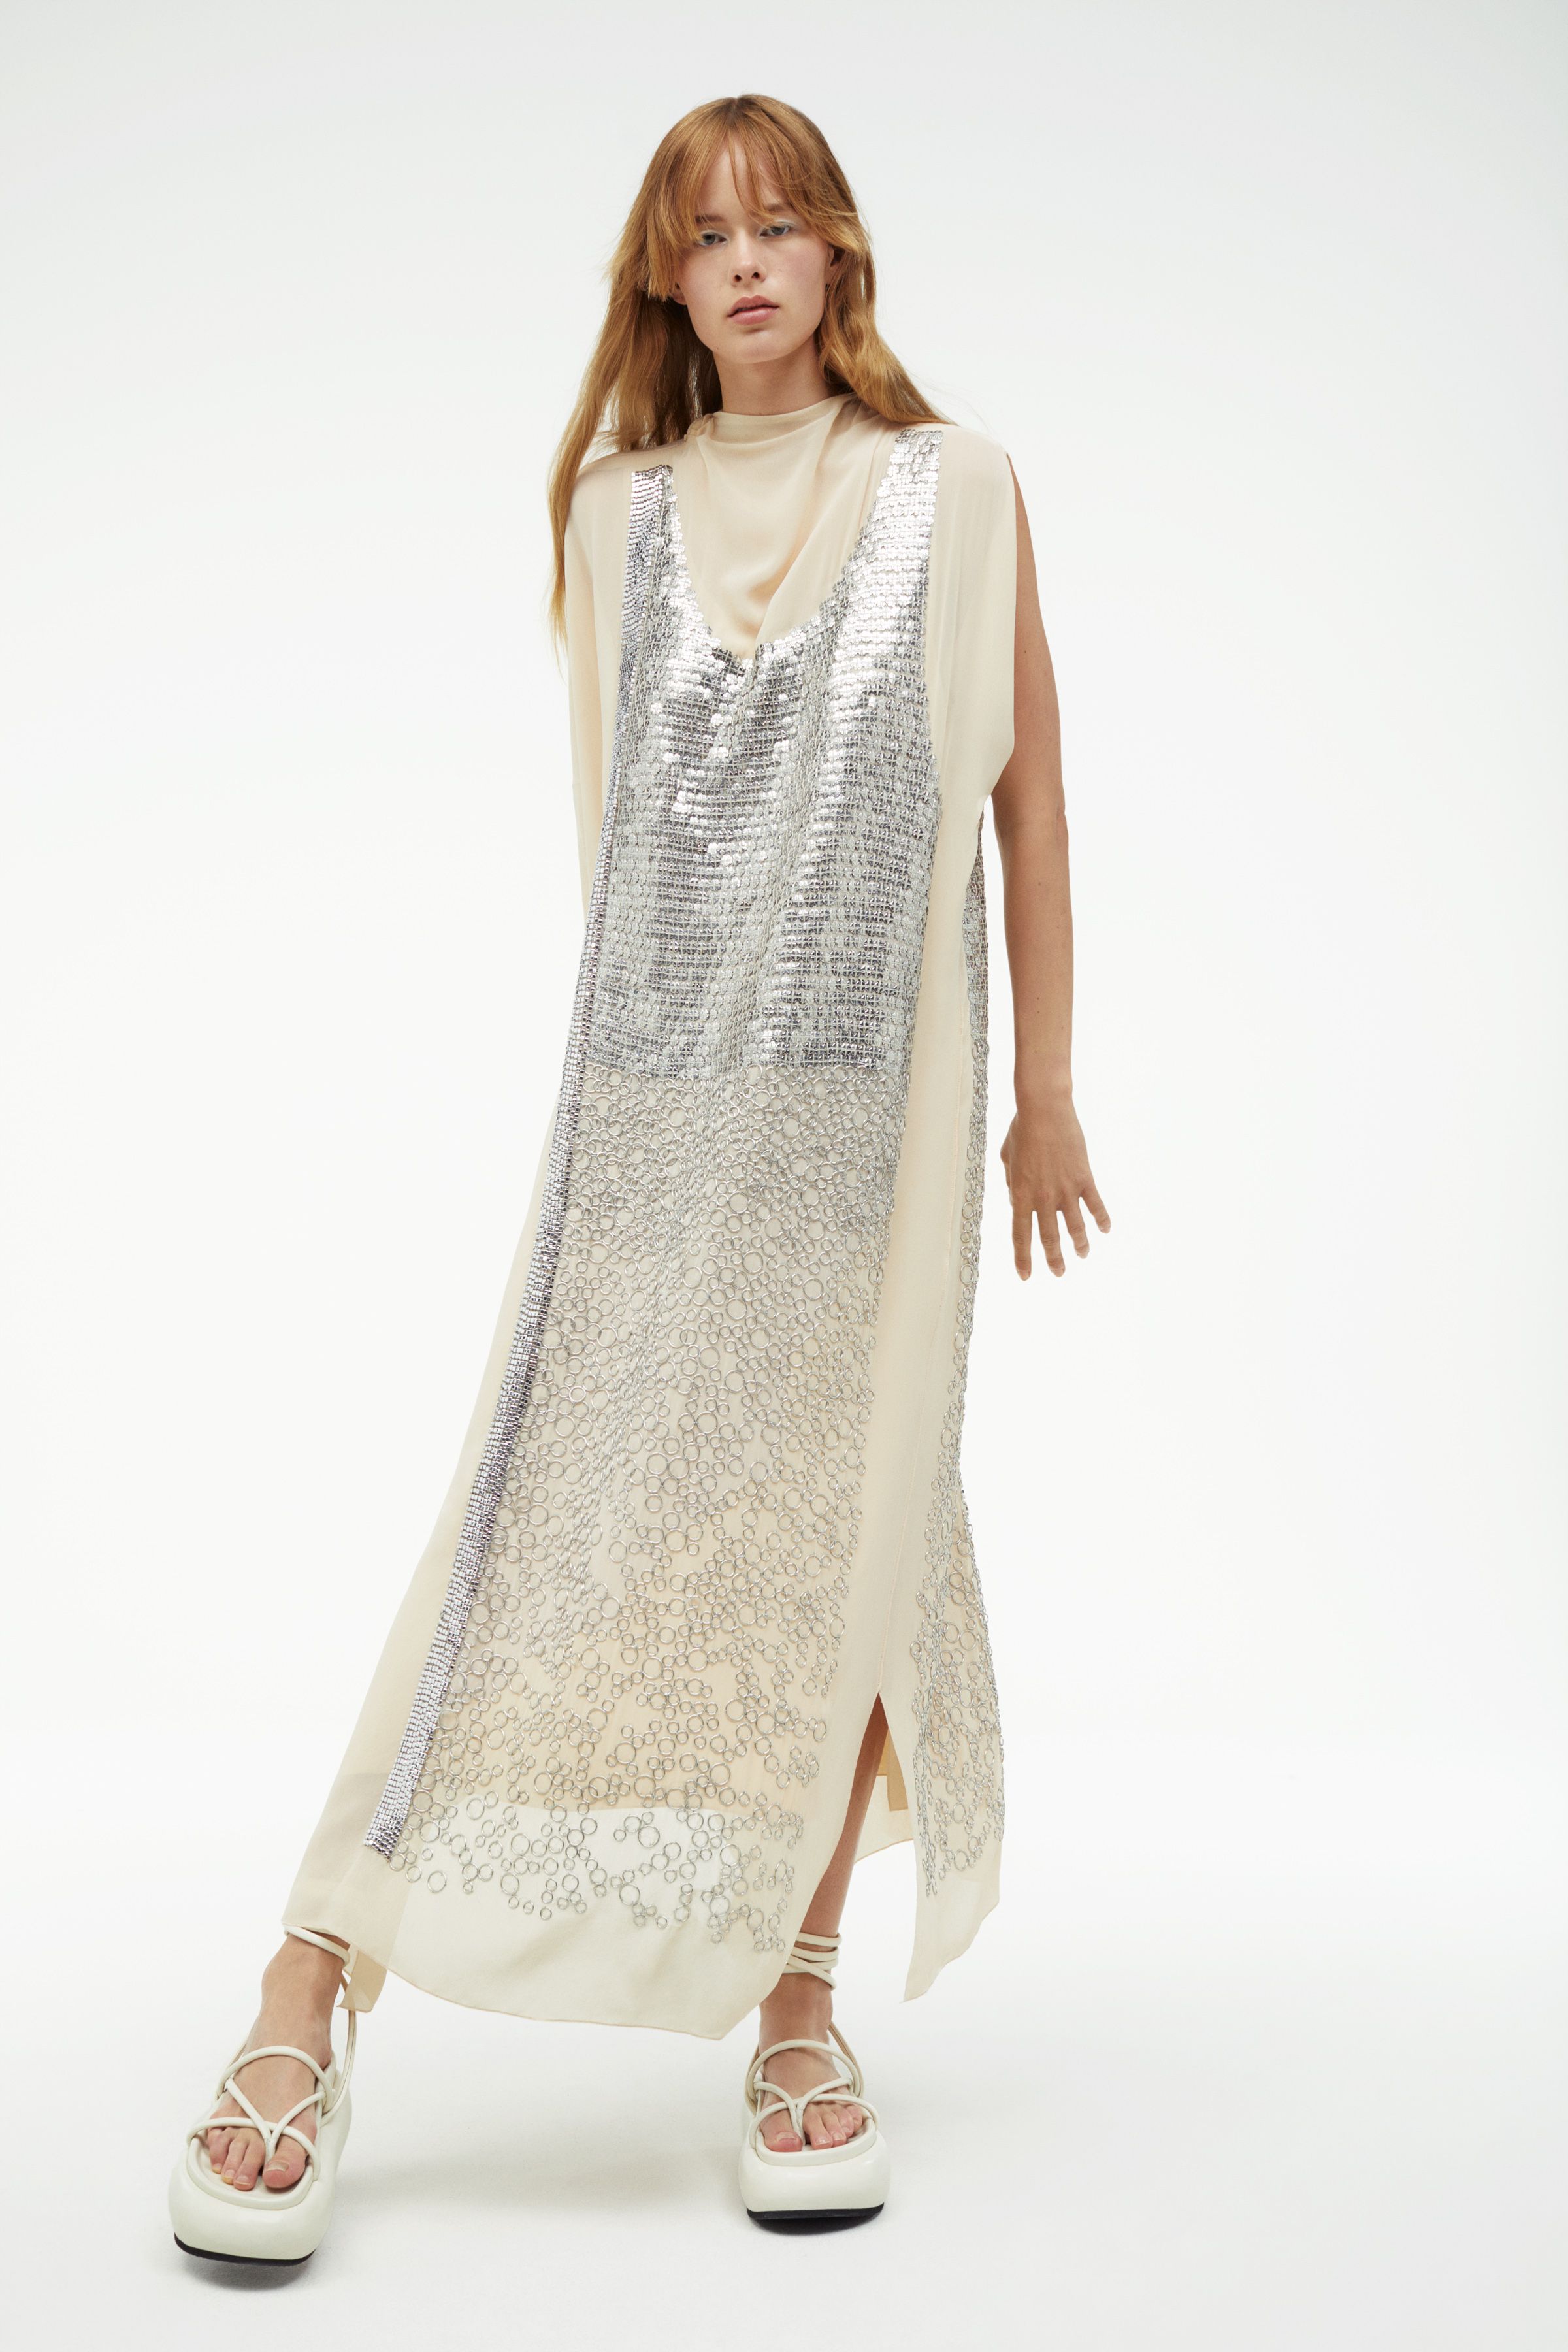 Zara Atelier 02: la firma lanza nueva línea de vestidos